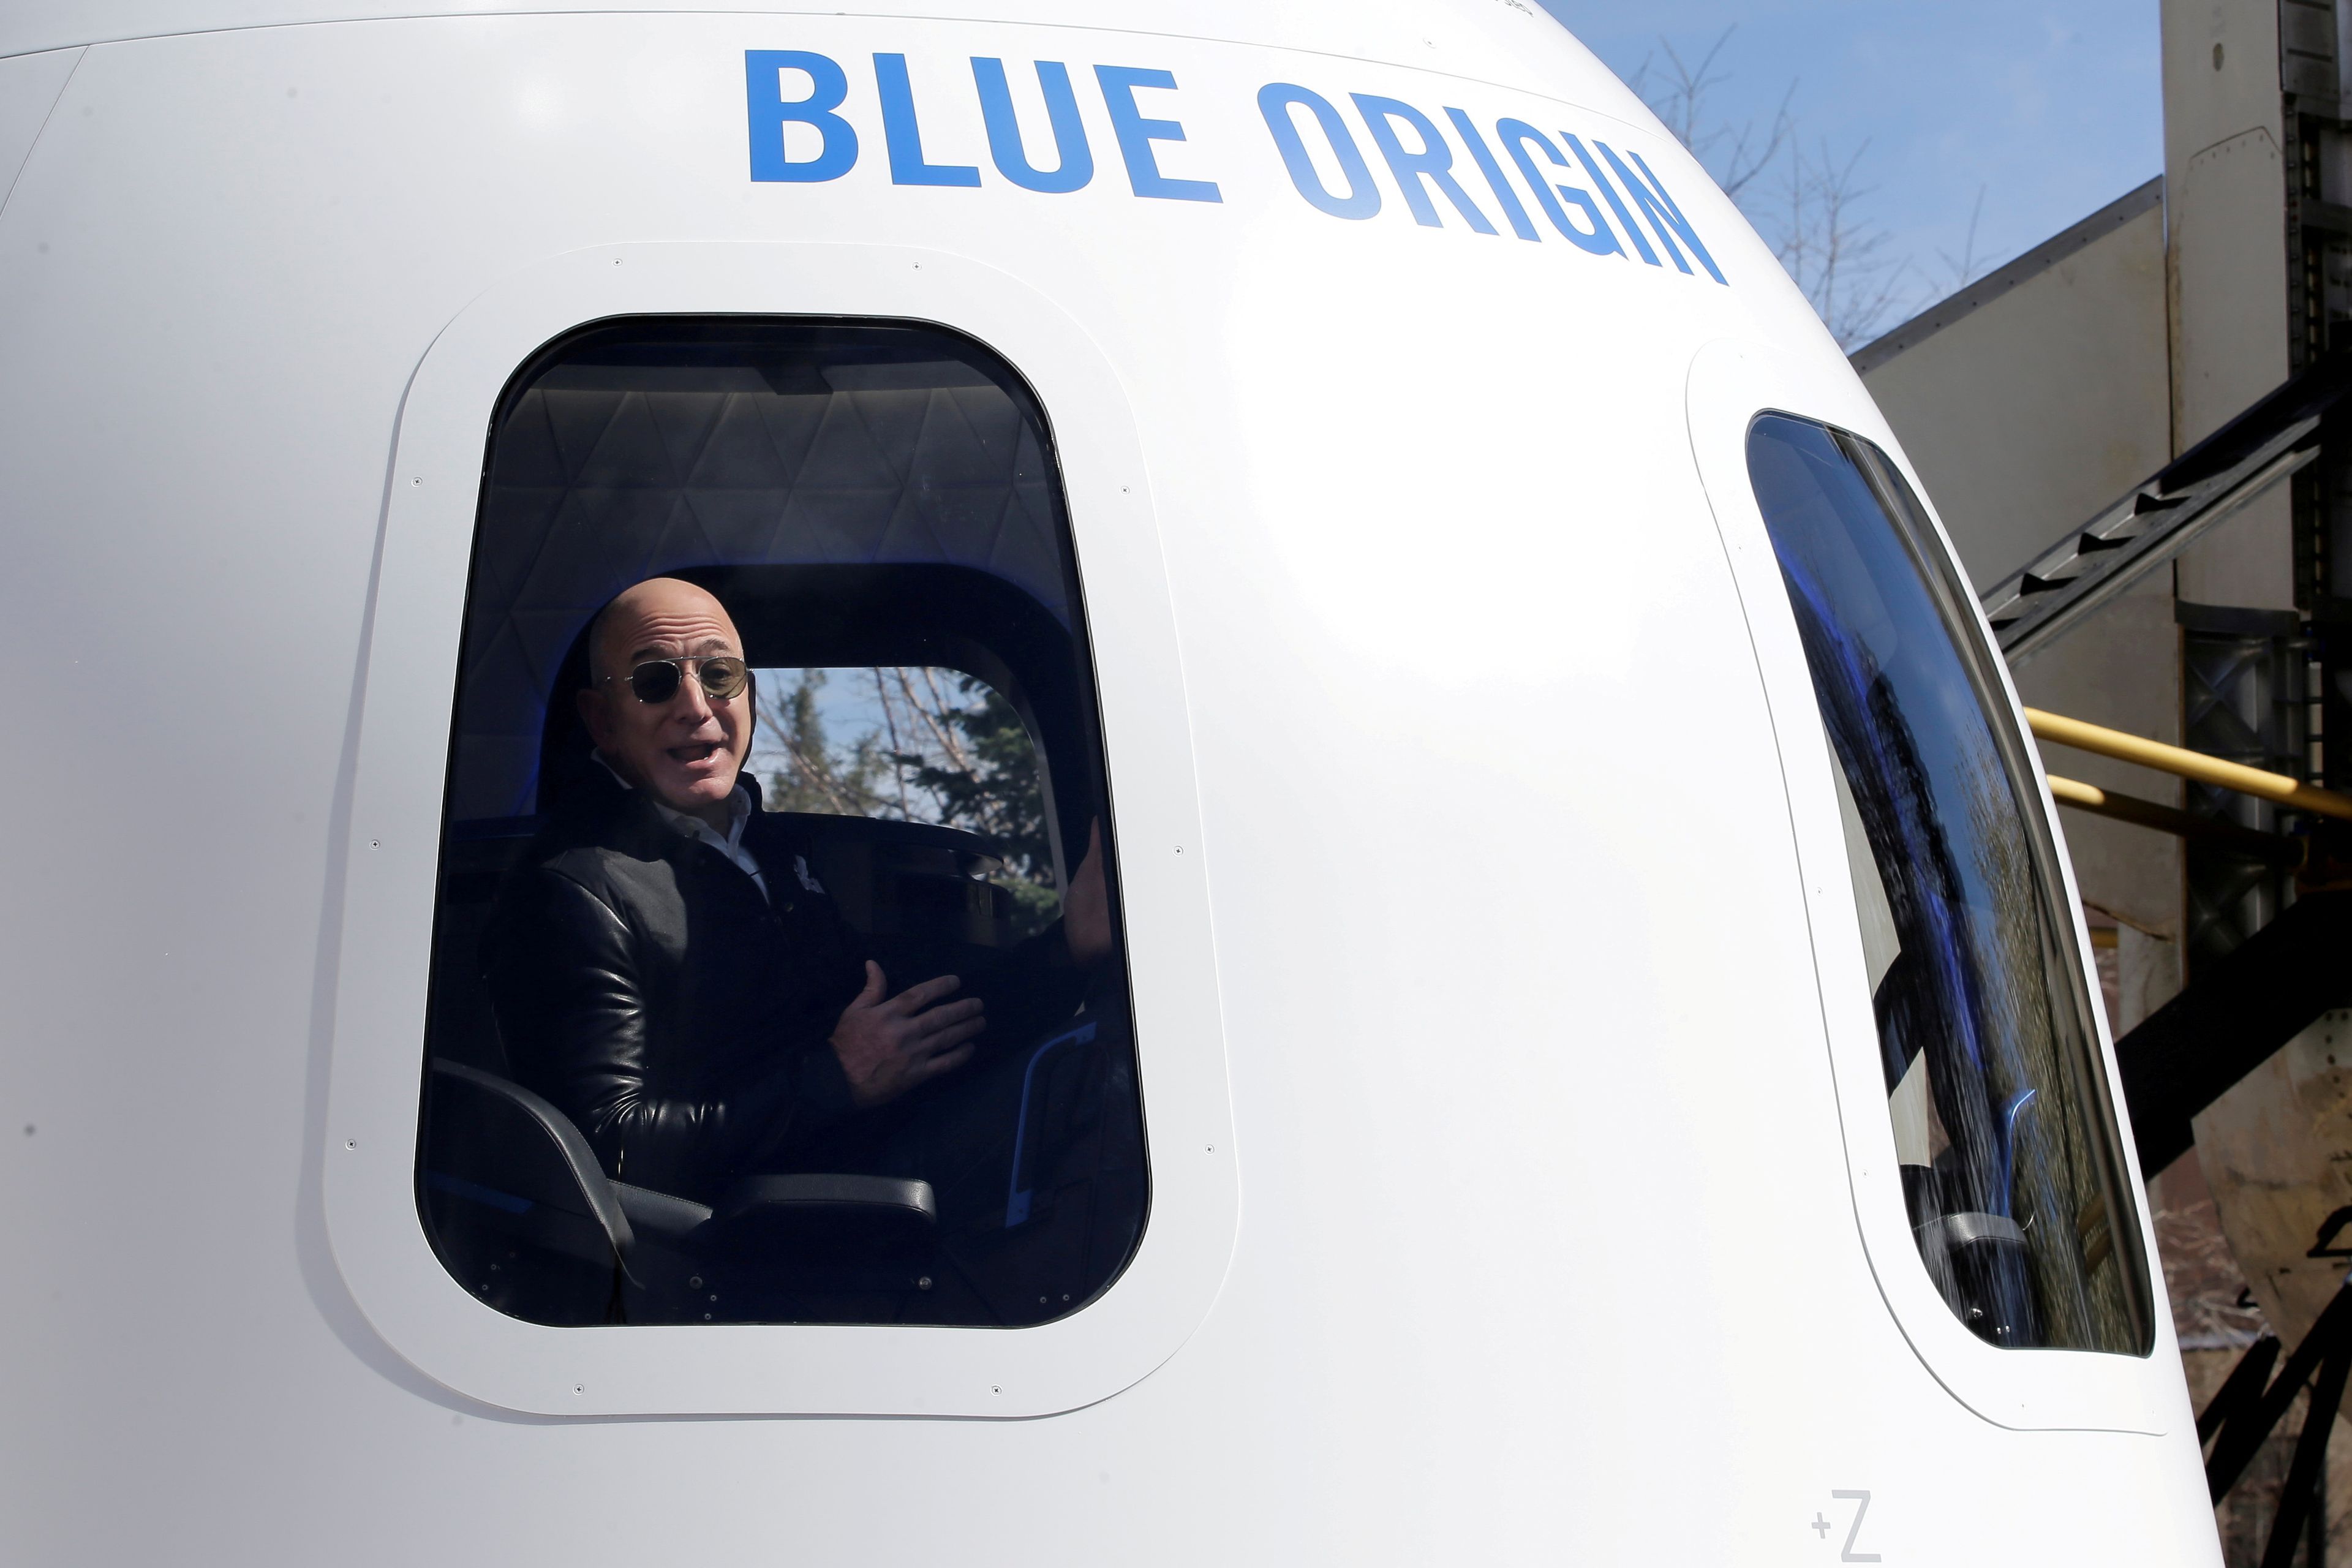 Jeff Bezos, fundador de Amazon y Blue Origin.